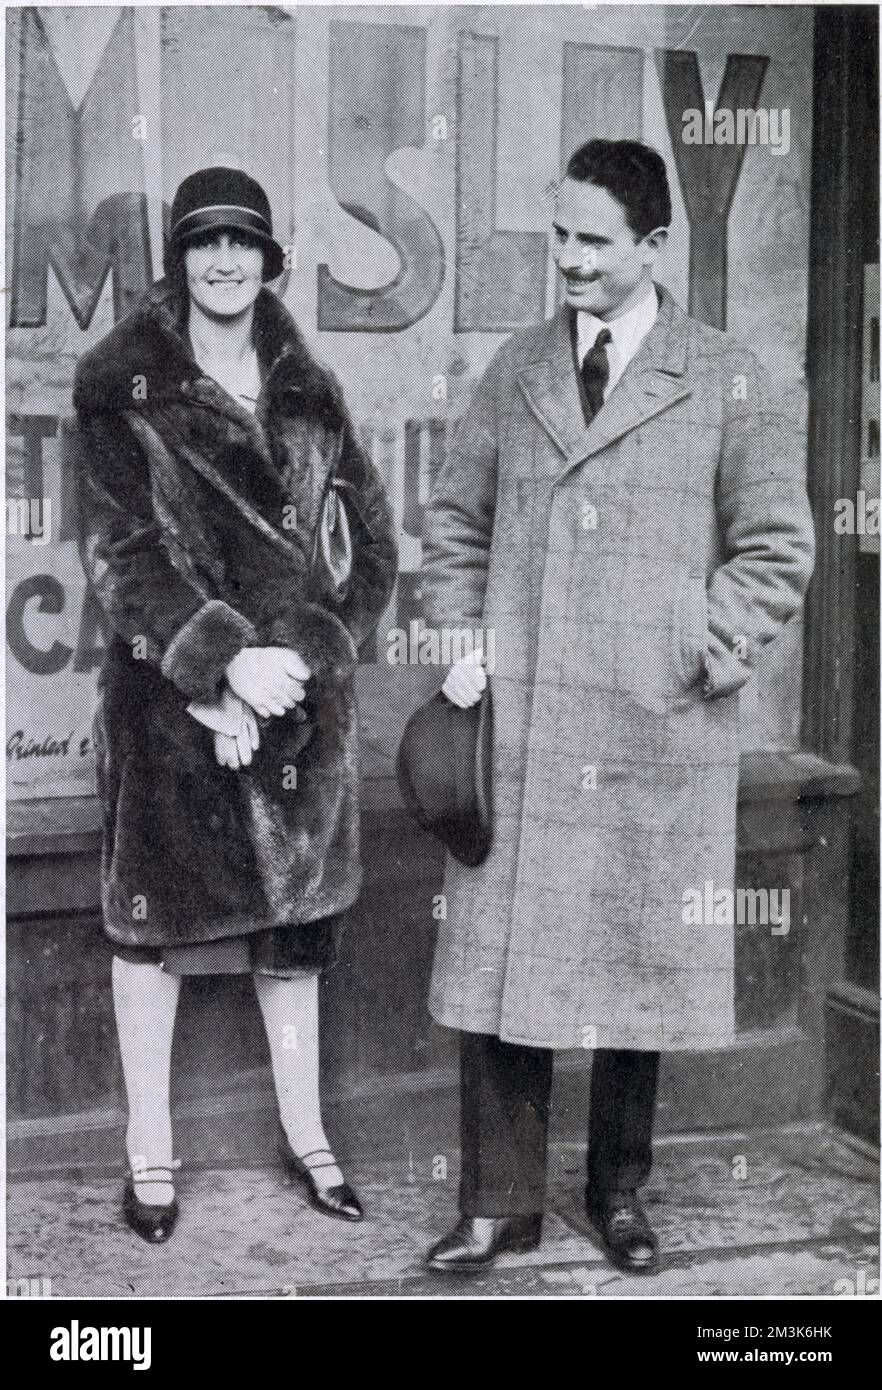 Lady Cynthia et Oswald Mosley font campagne à Smethwick, dans les Midlands de l'Ouest, pendant les élections. Oswald Mosley représentait alors le parti travailliste. Banque D'Images